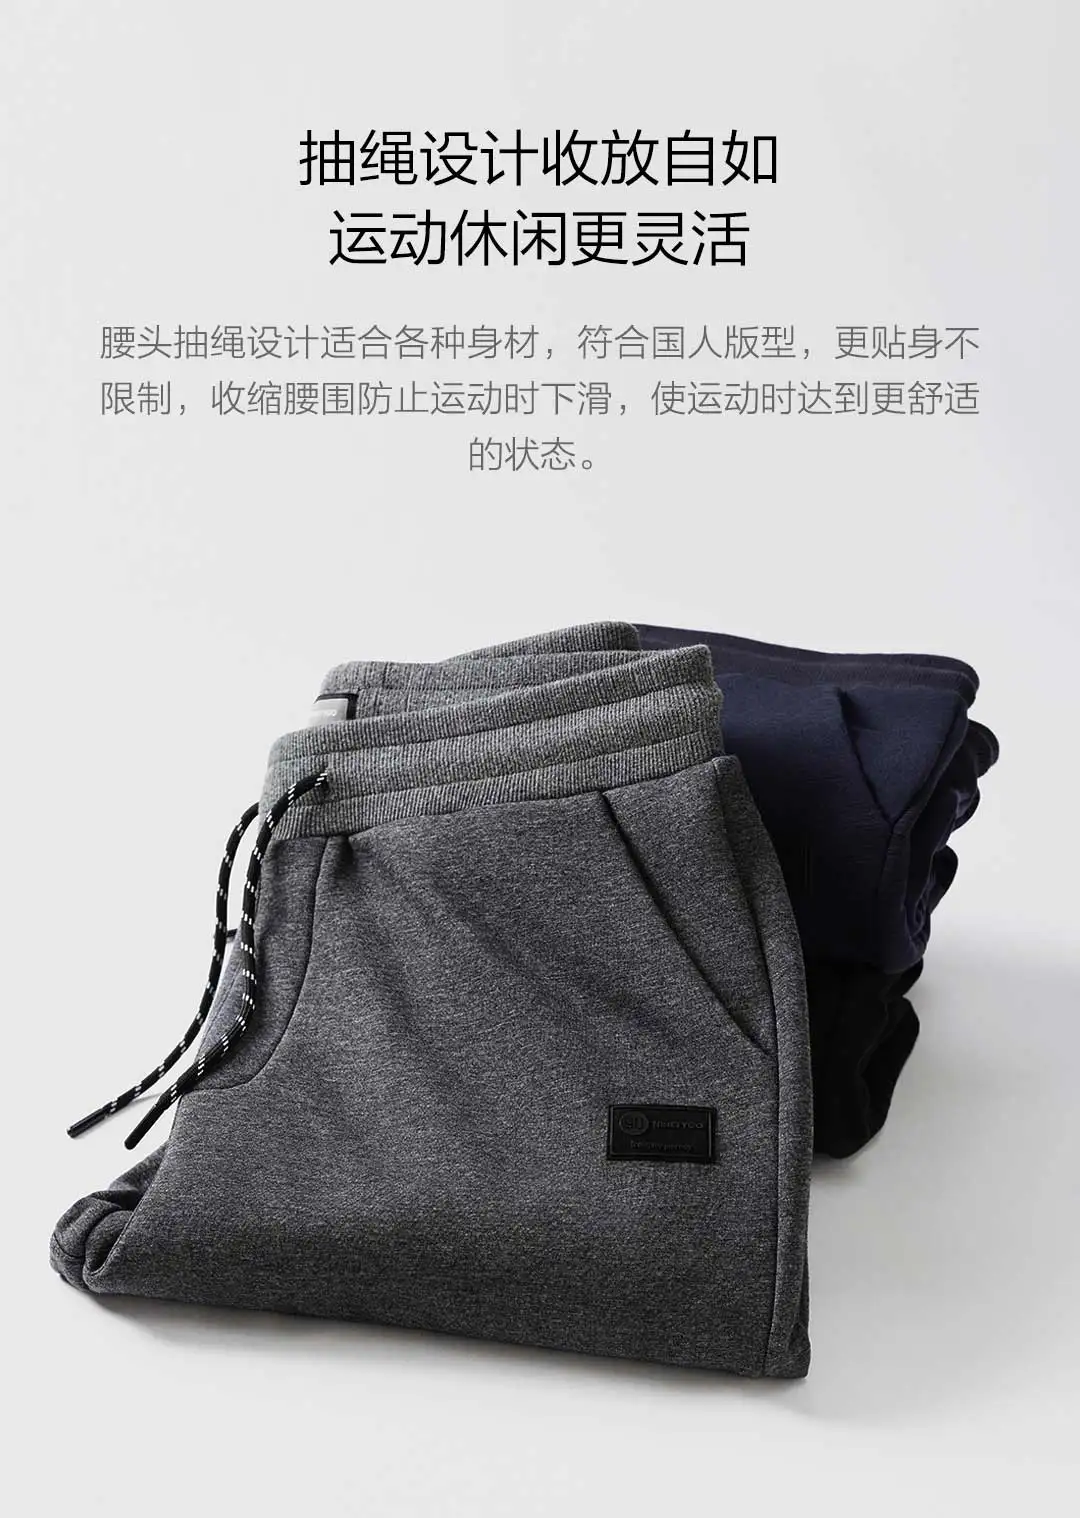 Xiaomi MIjia Youpin 90 очков мужские плюс бархатные теплые брюки двухслойная ткань удобная и теплая флисовая подкладка